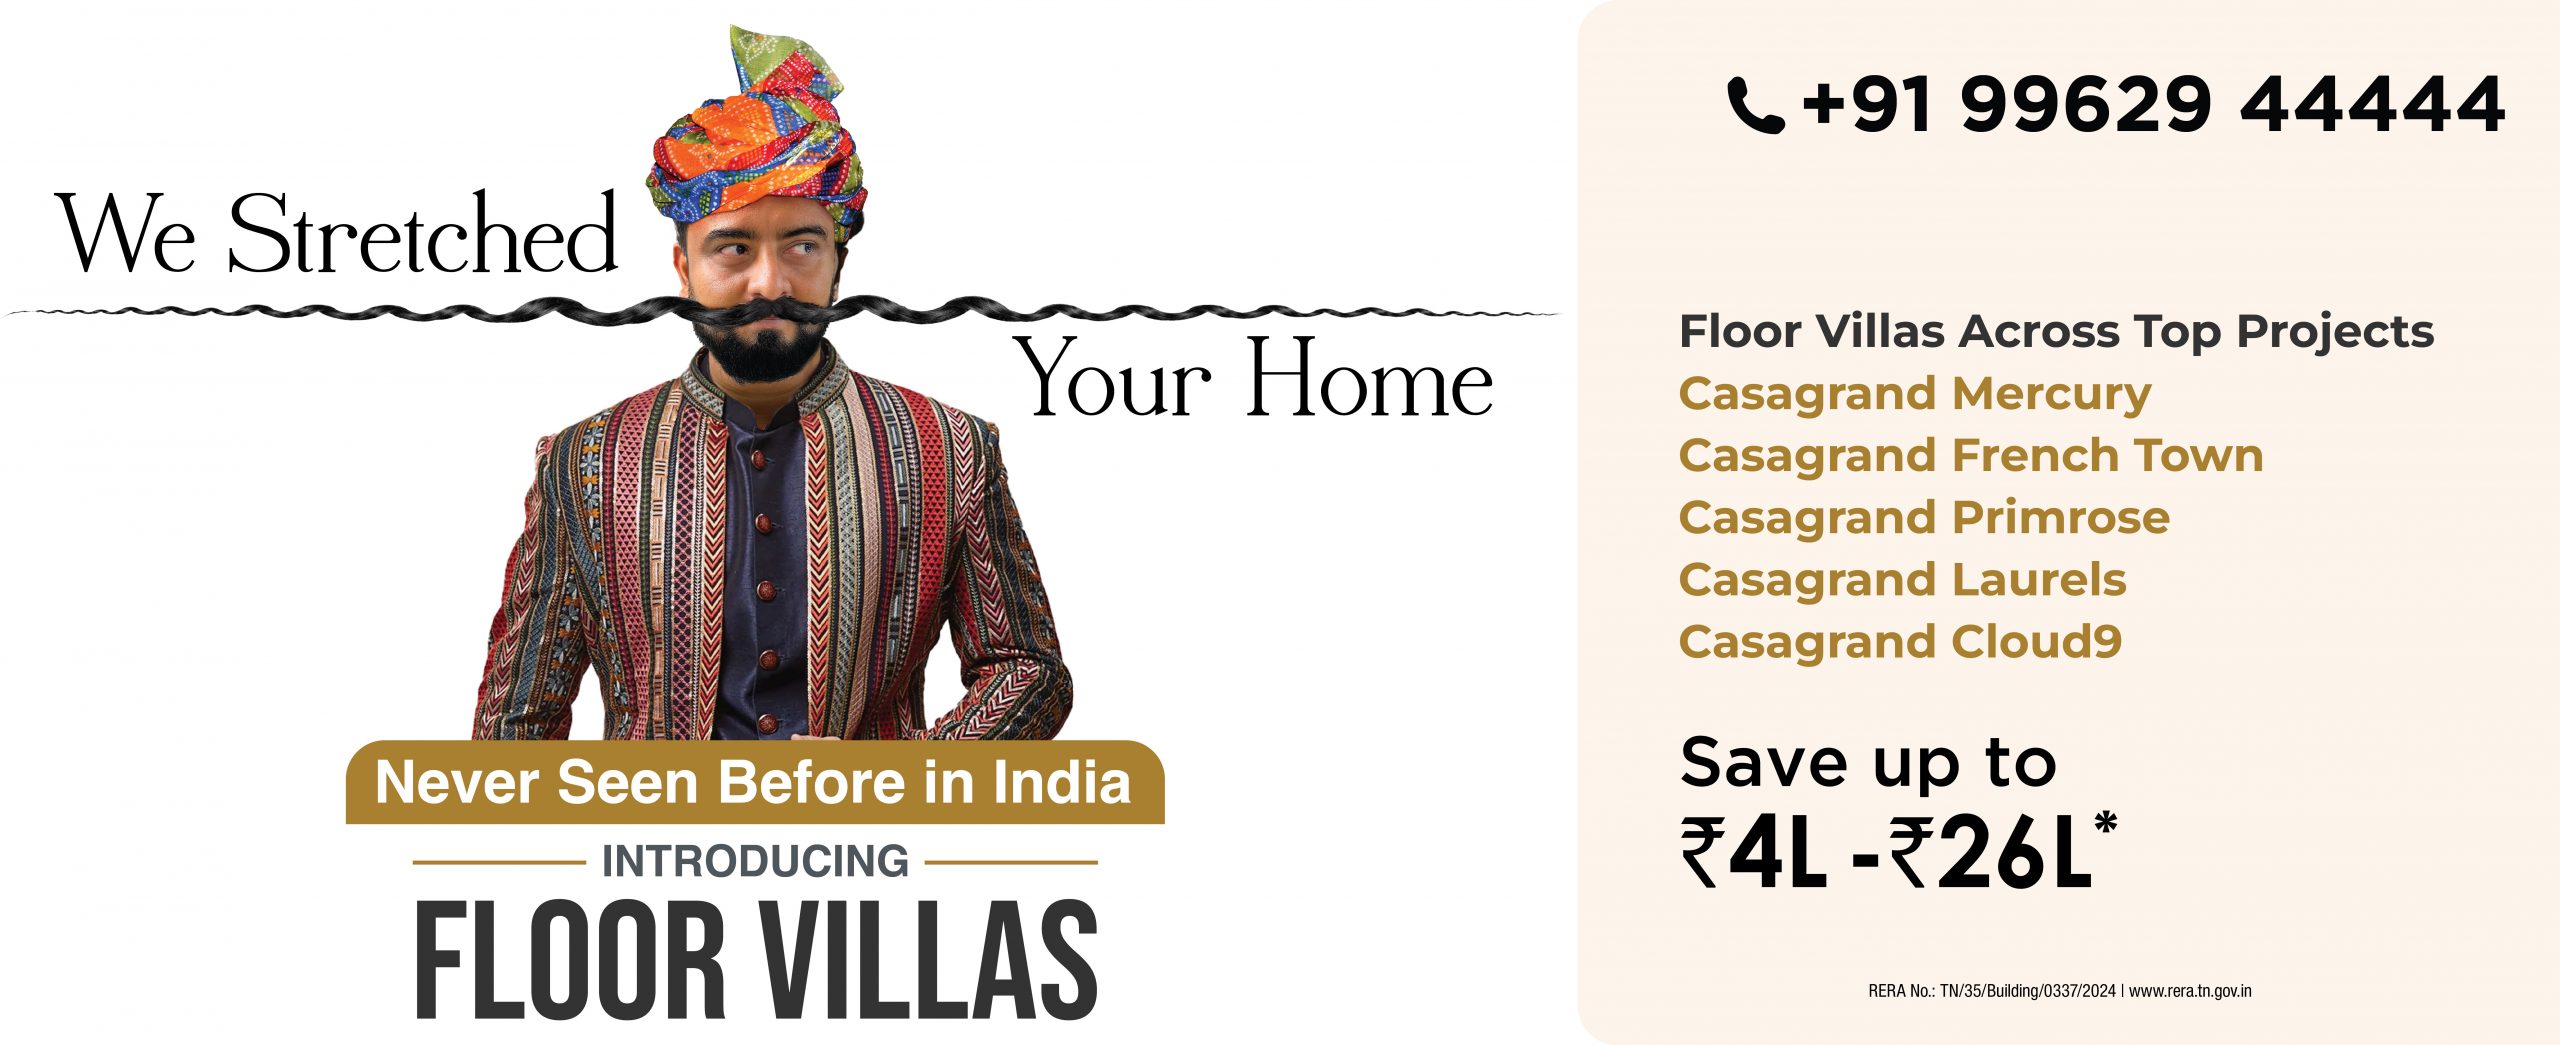 CG Floor Villa Brand Campaign Web banner-01